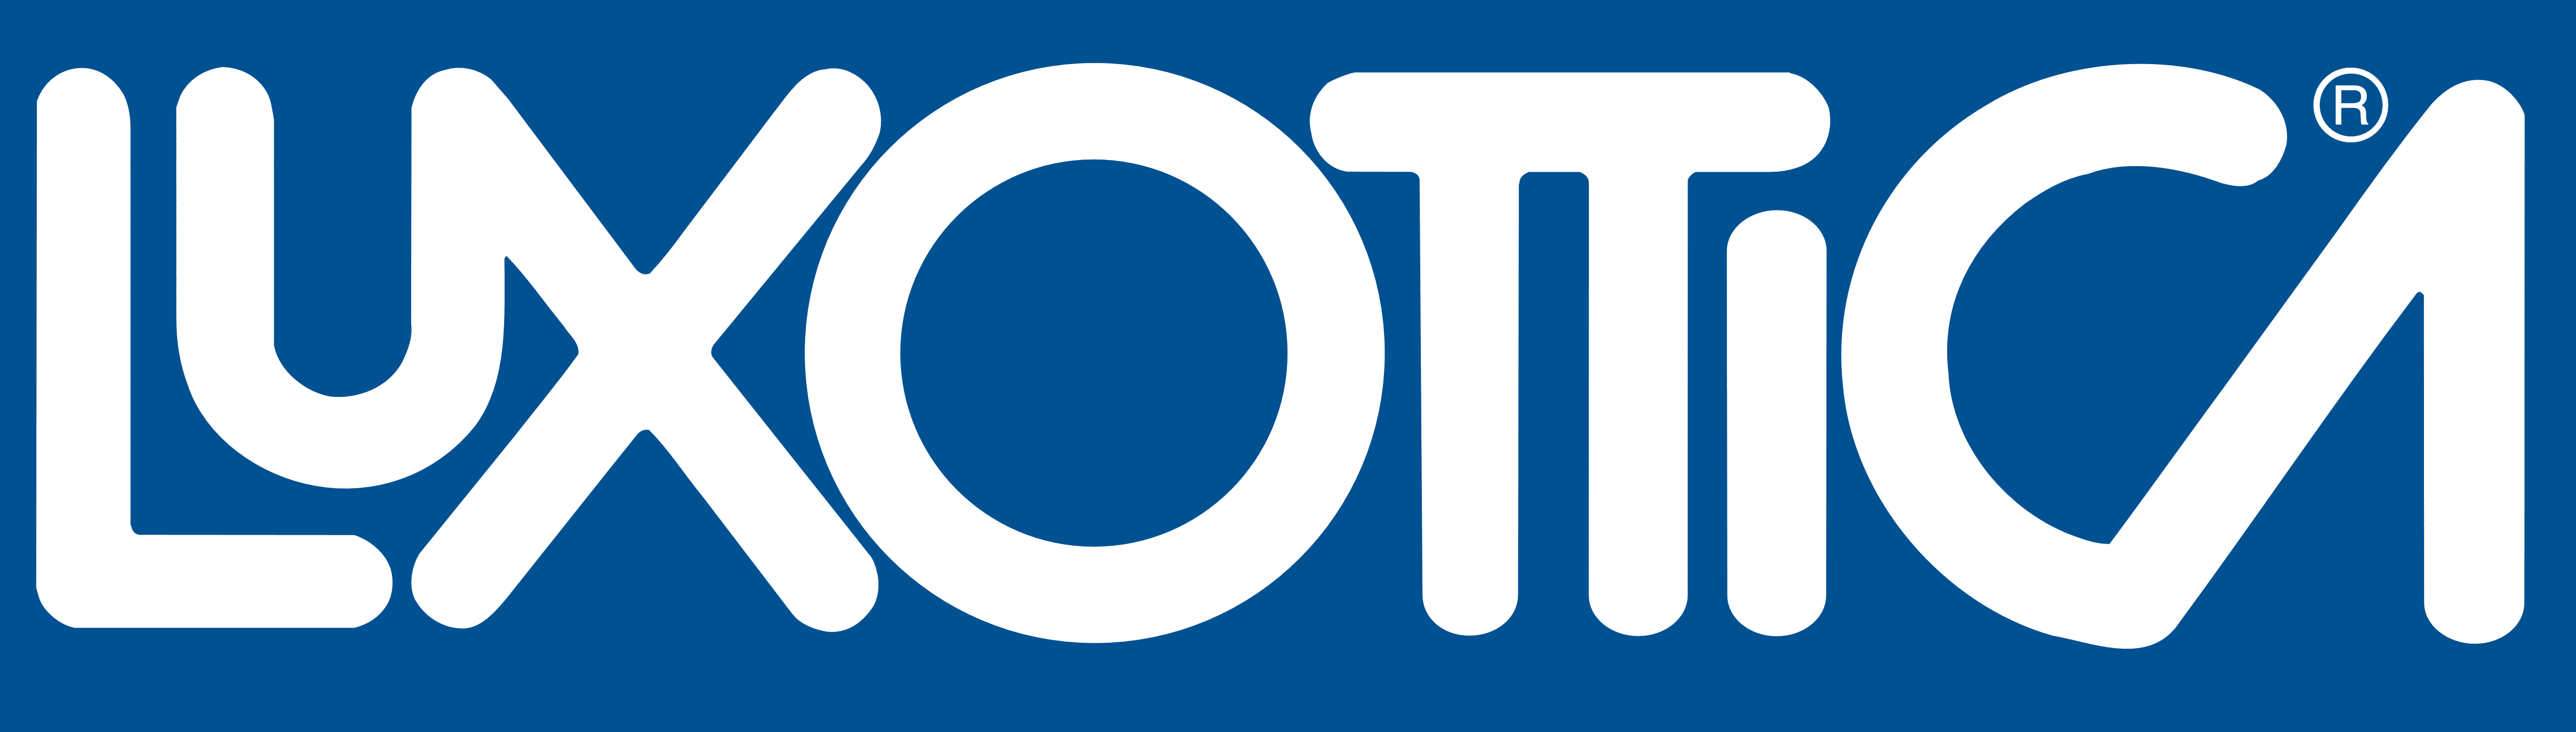 Luxottica Brand Logo